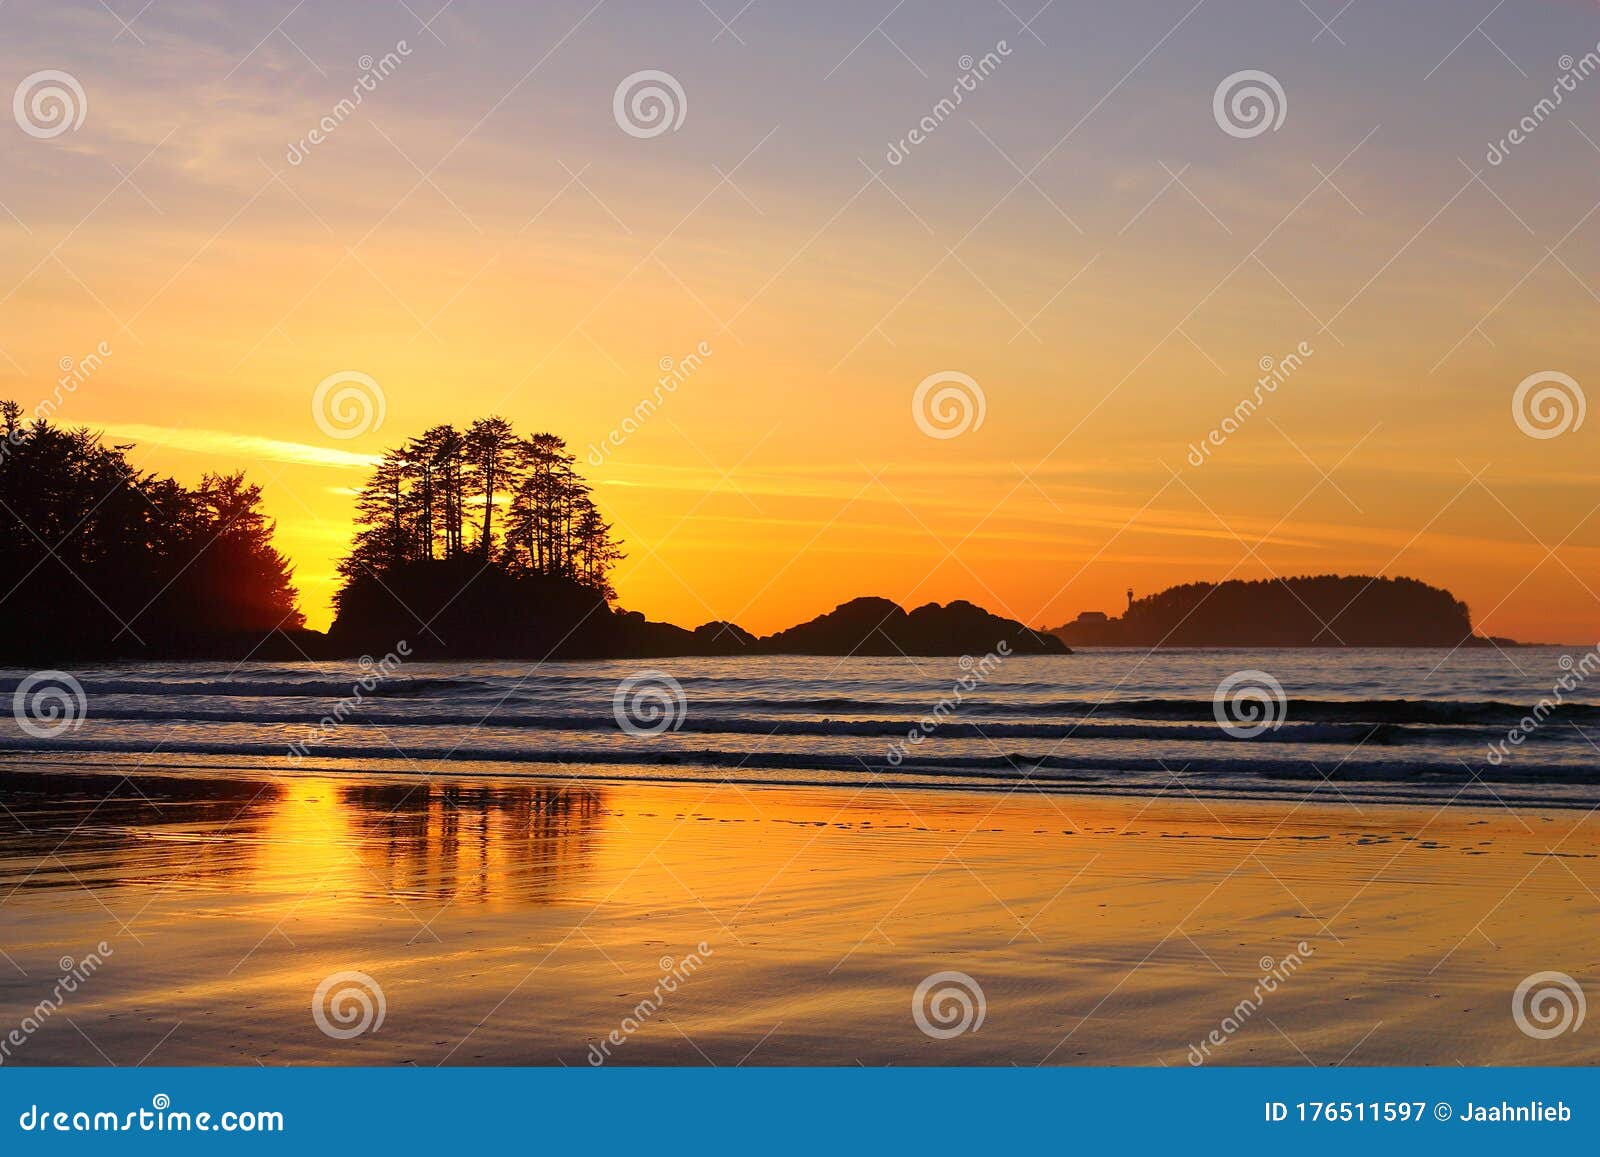 όμορφο ηλιοβασίλεμα του ειρηνικού πίσω από το frank island στην παραλία chesterman μπιτς τοφίνο βανκούβερ νησί british coluia cana